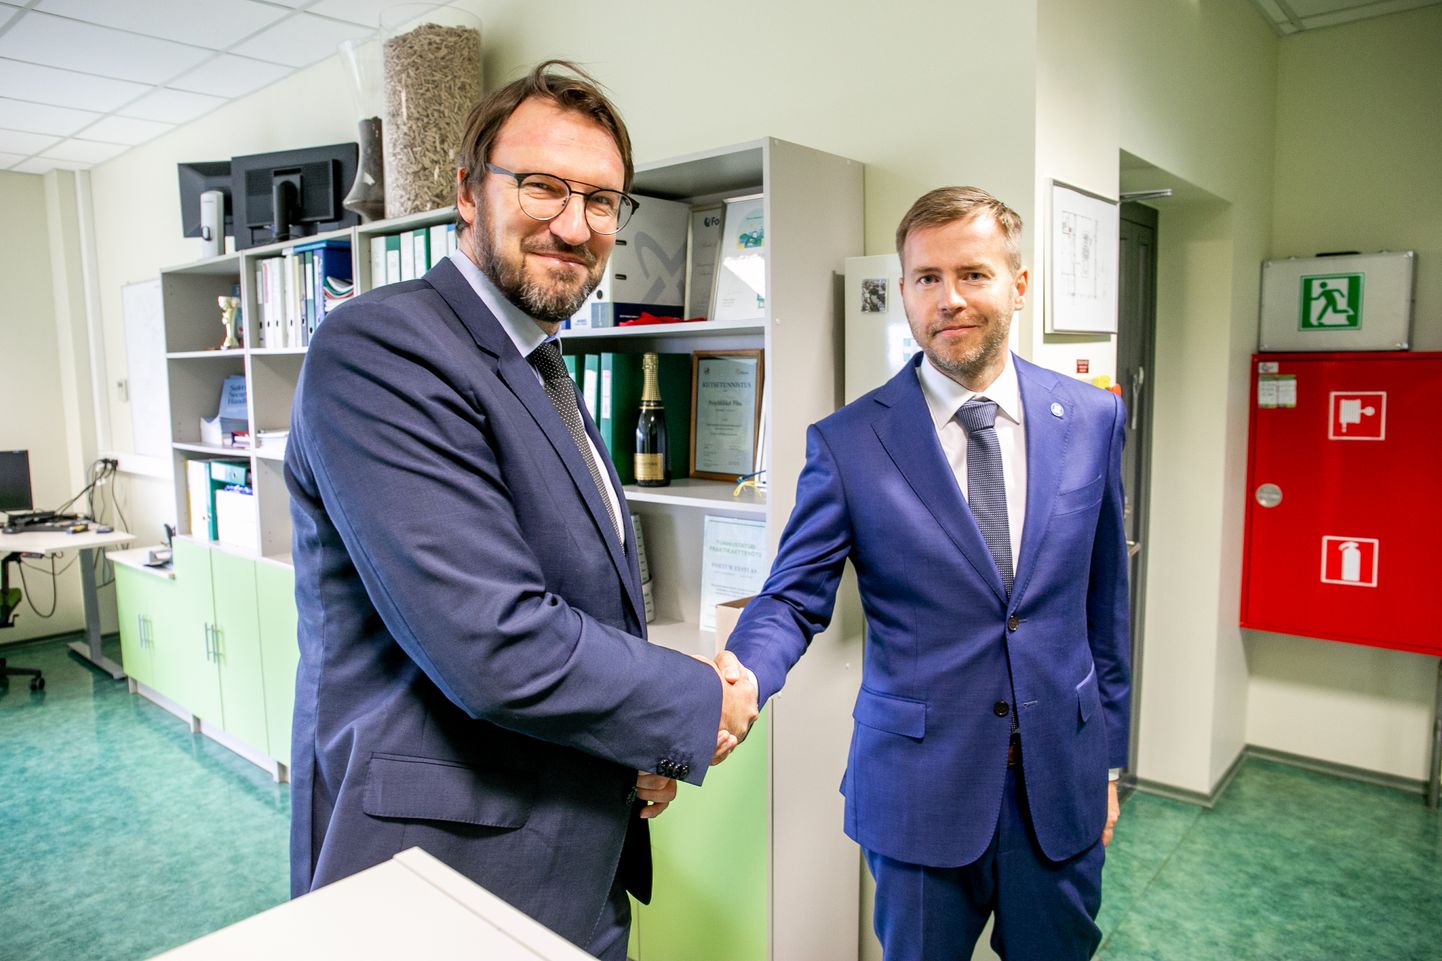 Eesti Vabariigi ettevõtlus- ja infotehnoloogiaminister Rene Tammist külastas Fortum Pärnu koostootmisjaama